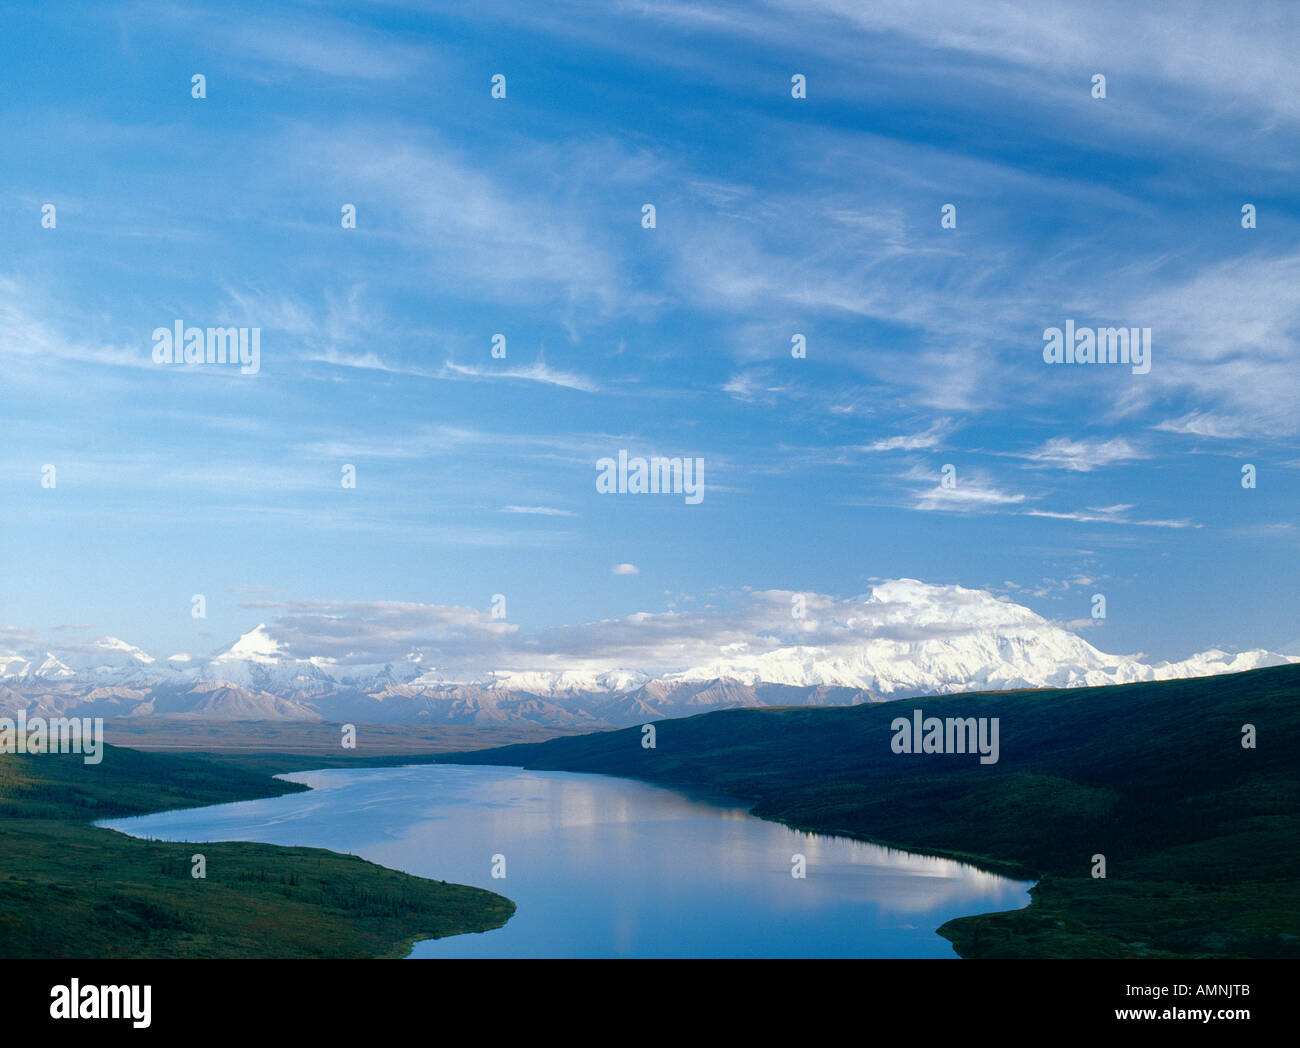 Mount McKinley, Alaska, USA Stock Photo